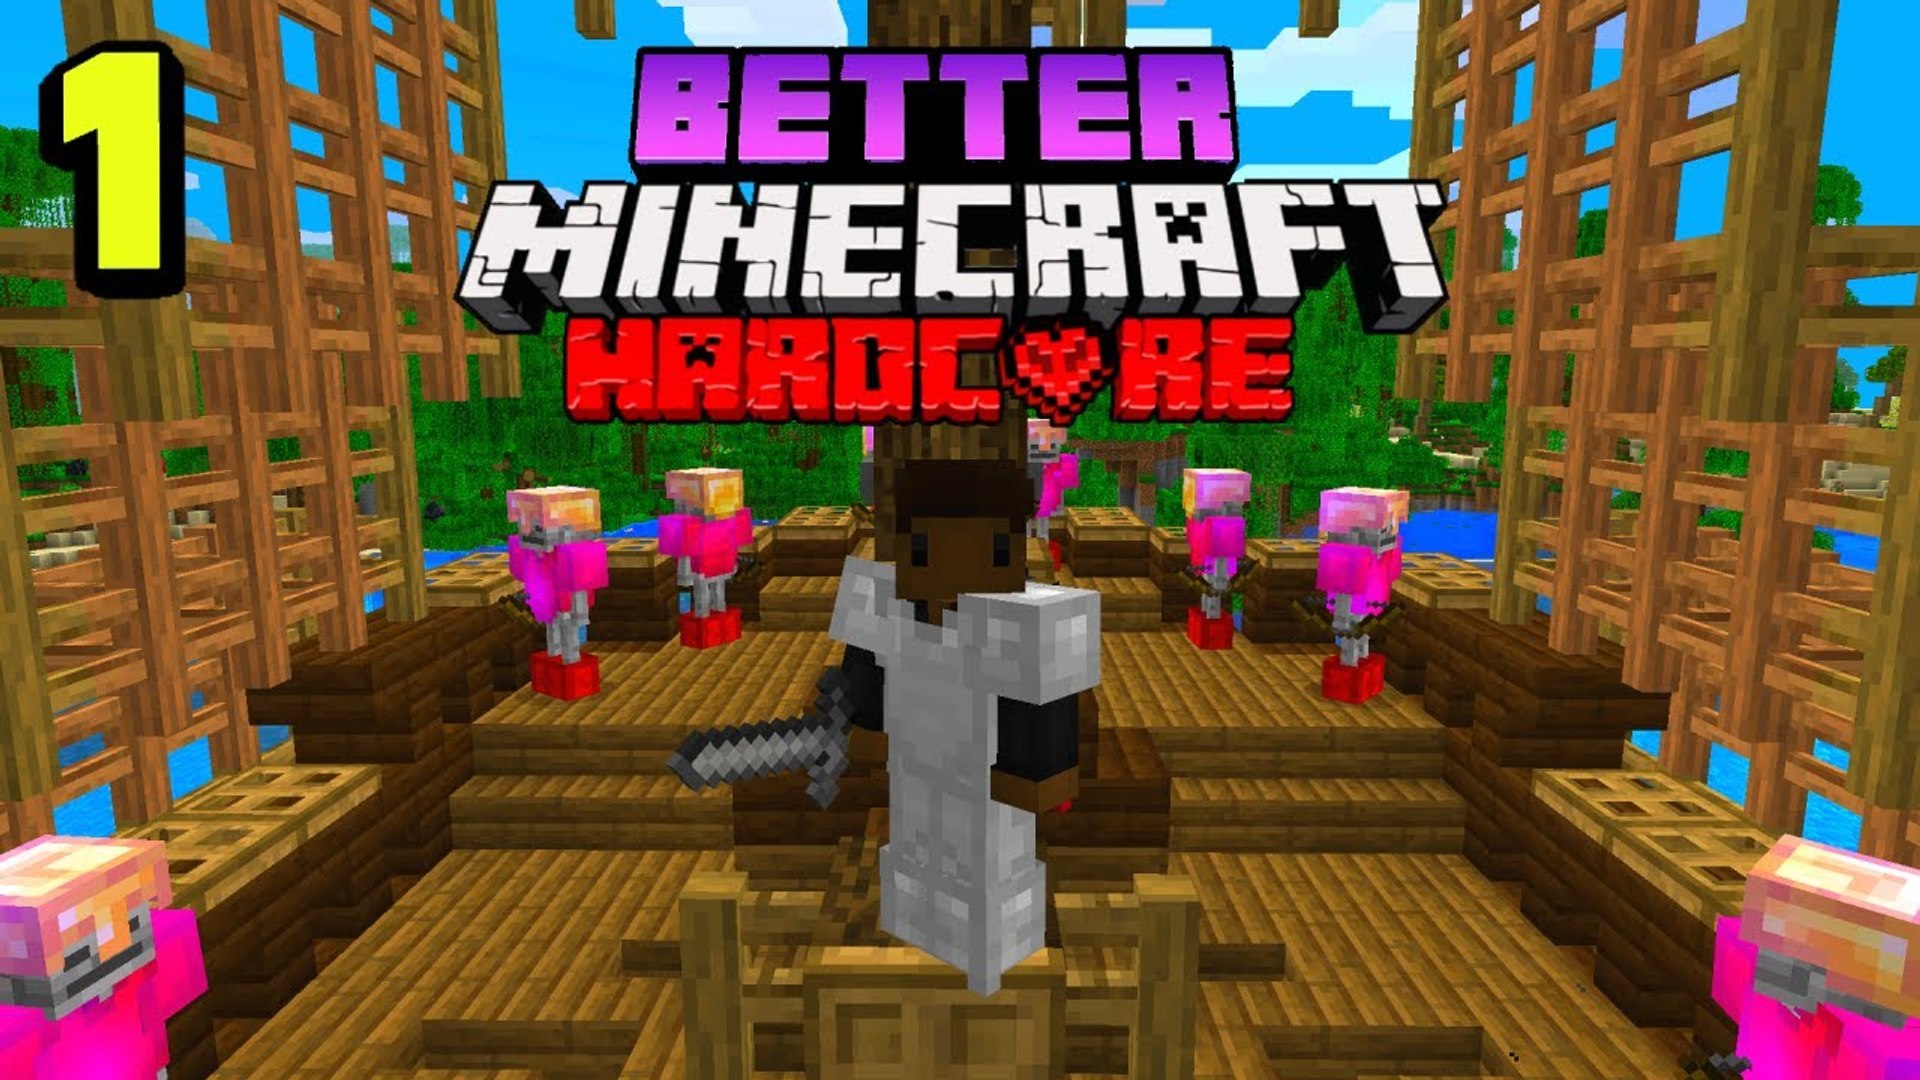 Minecraft Hardcore Ep 1 